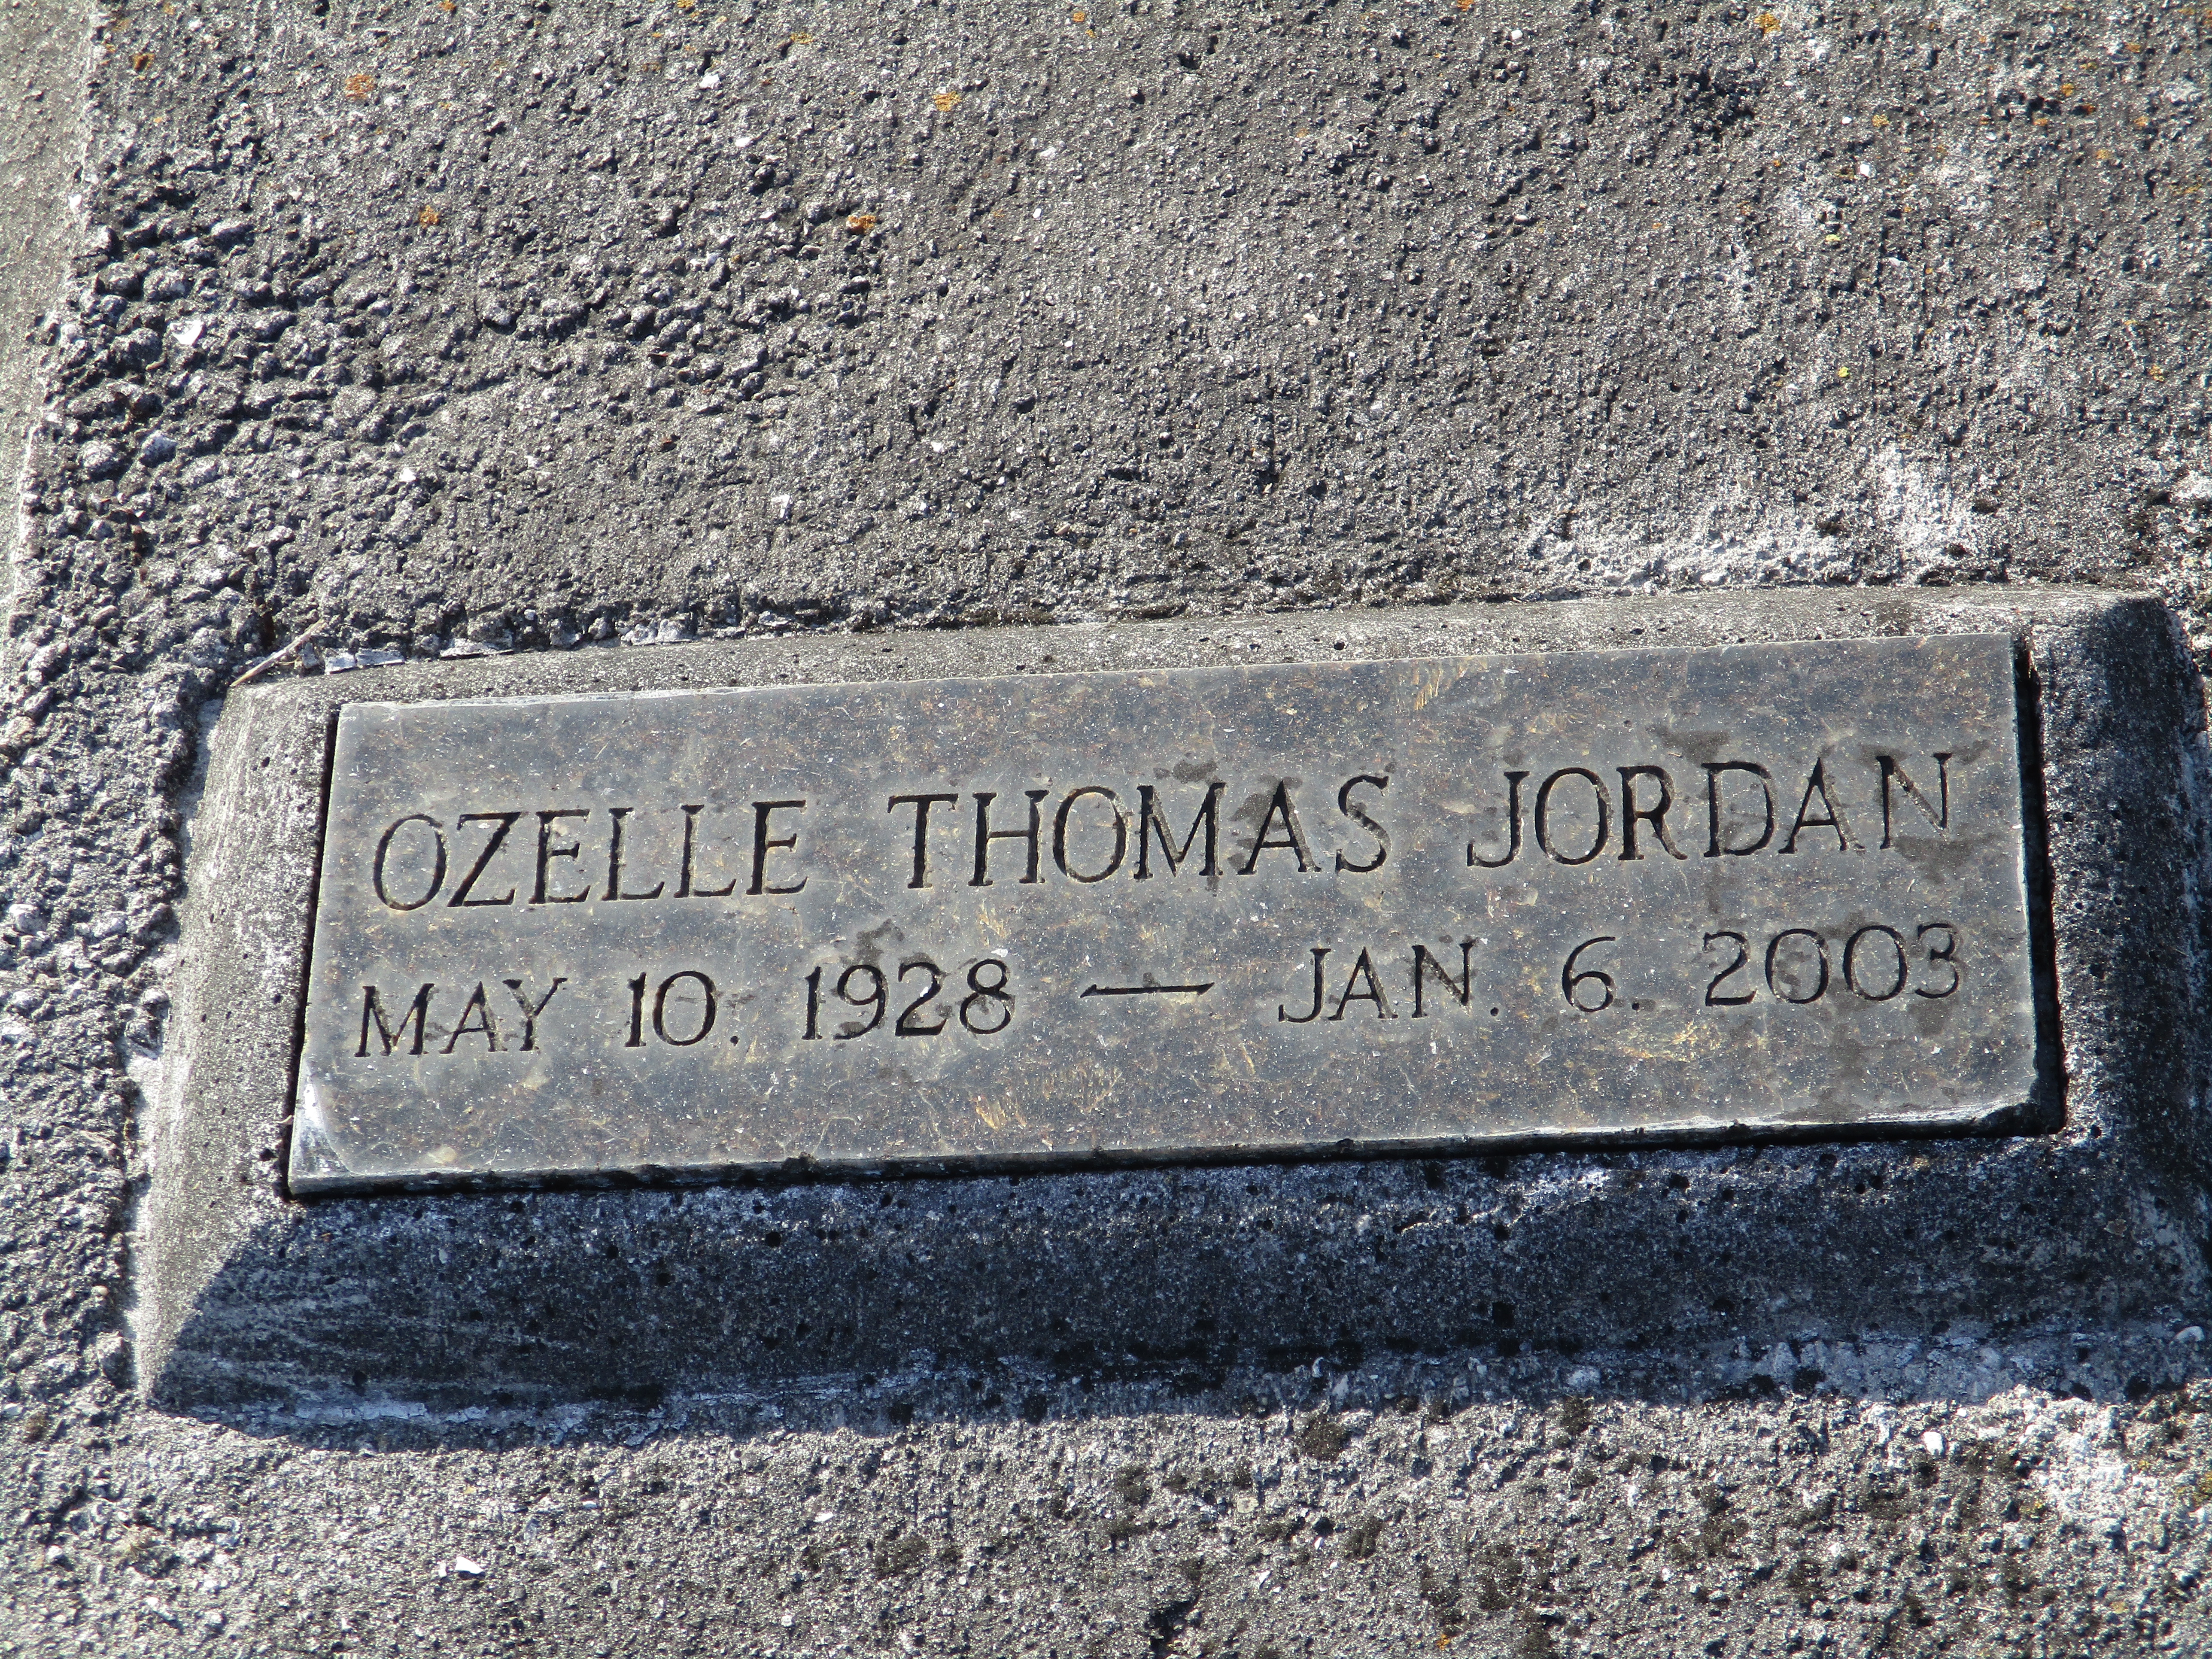 Ozelle Thomas Jordan